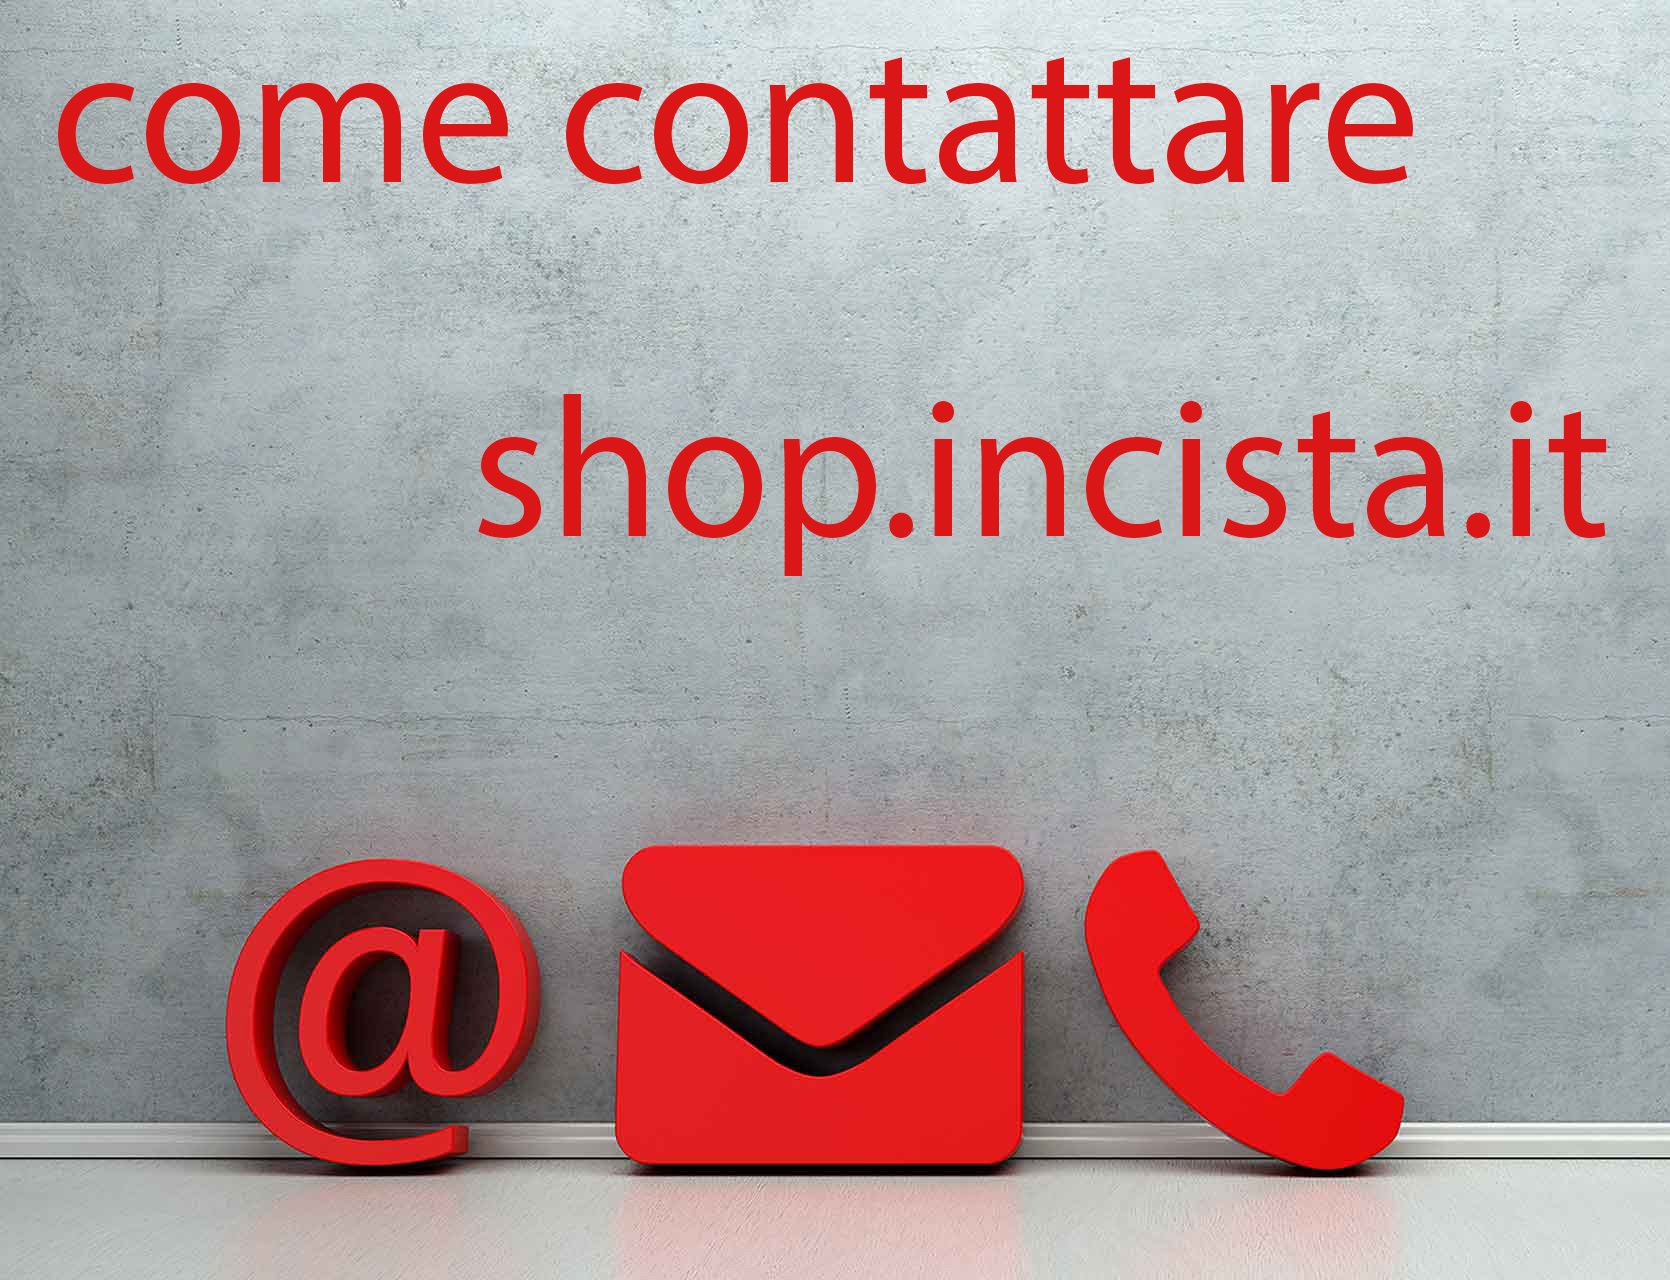 Contatta Incista La pagina dei contatti dello shop.incista.it